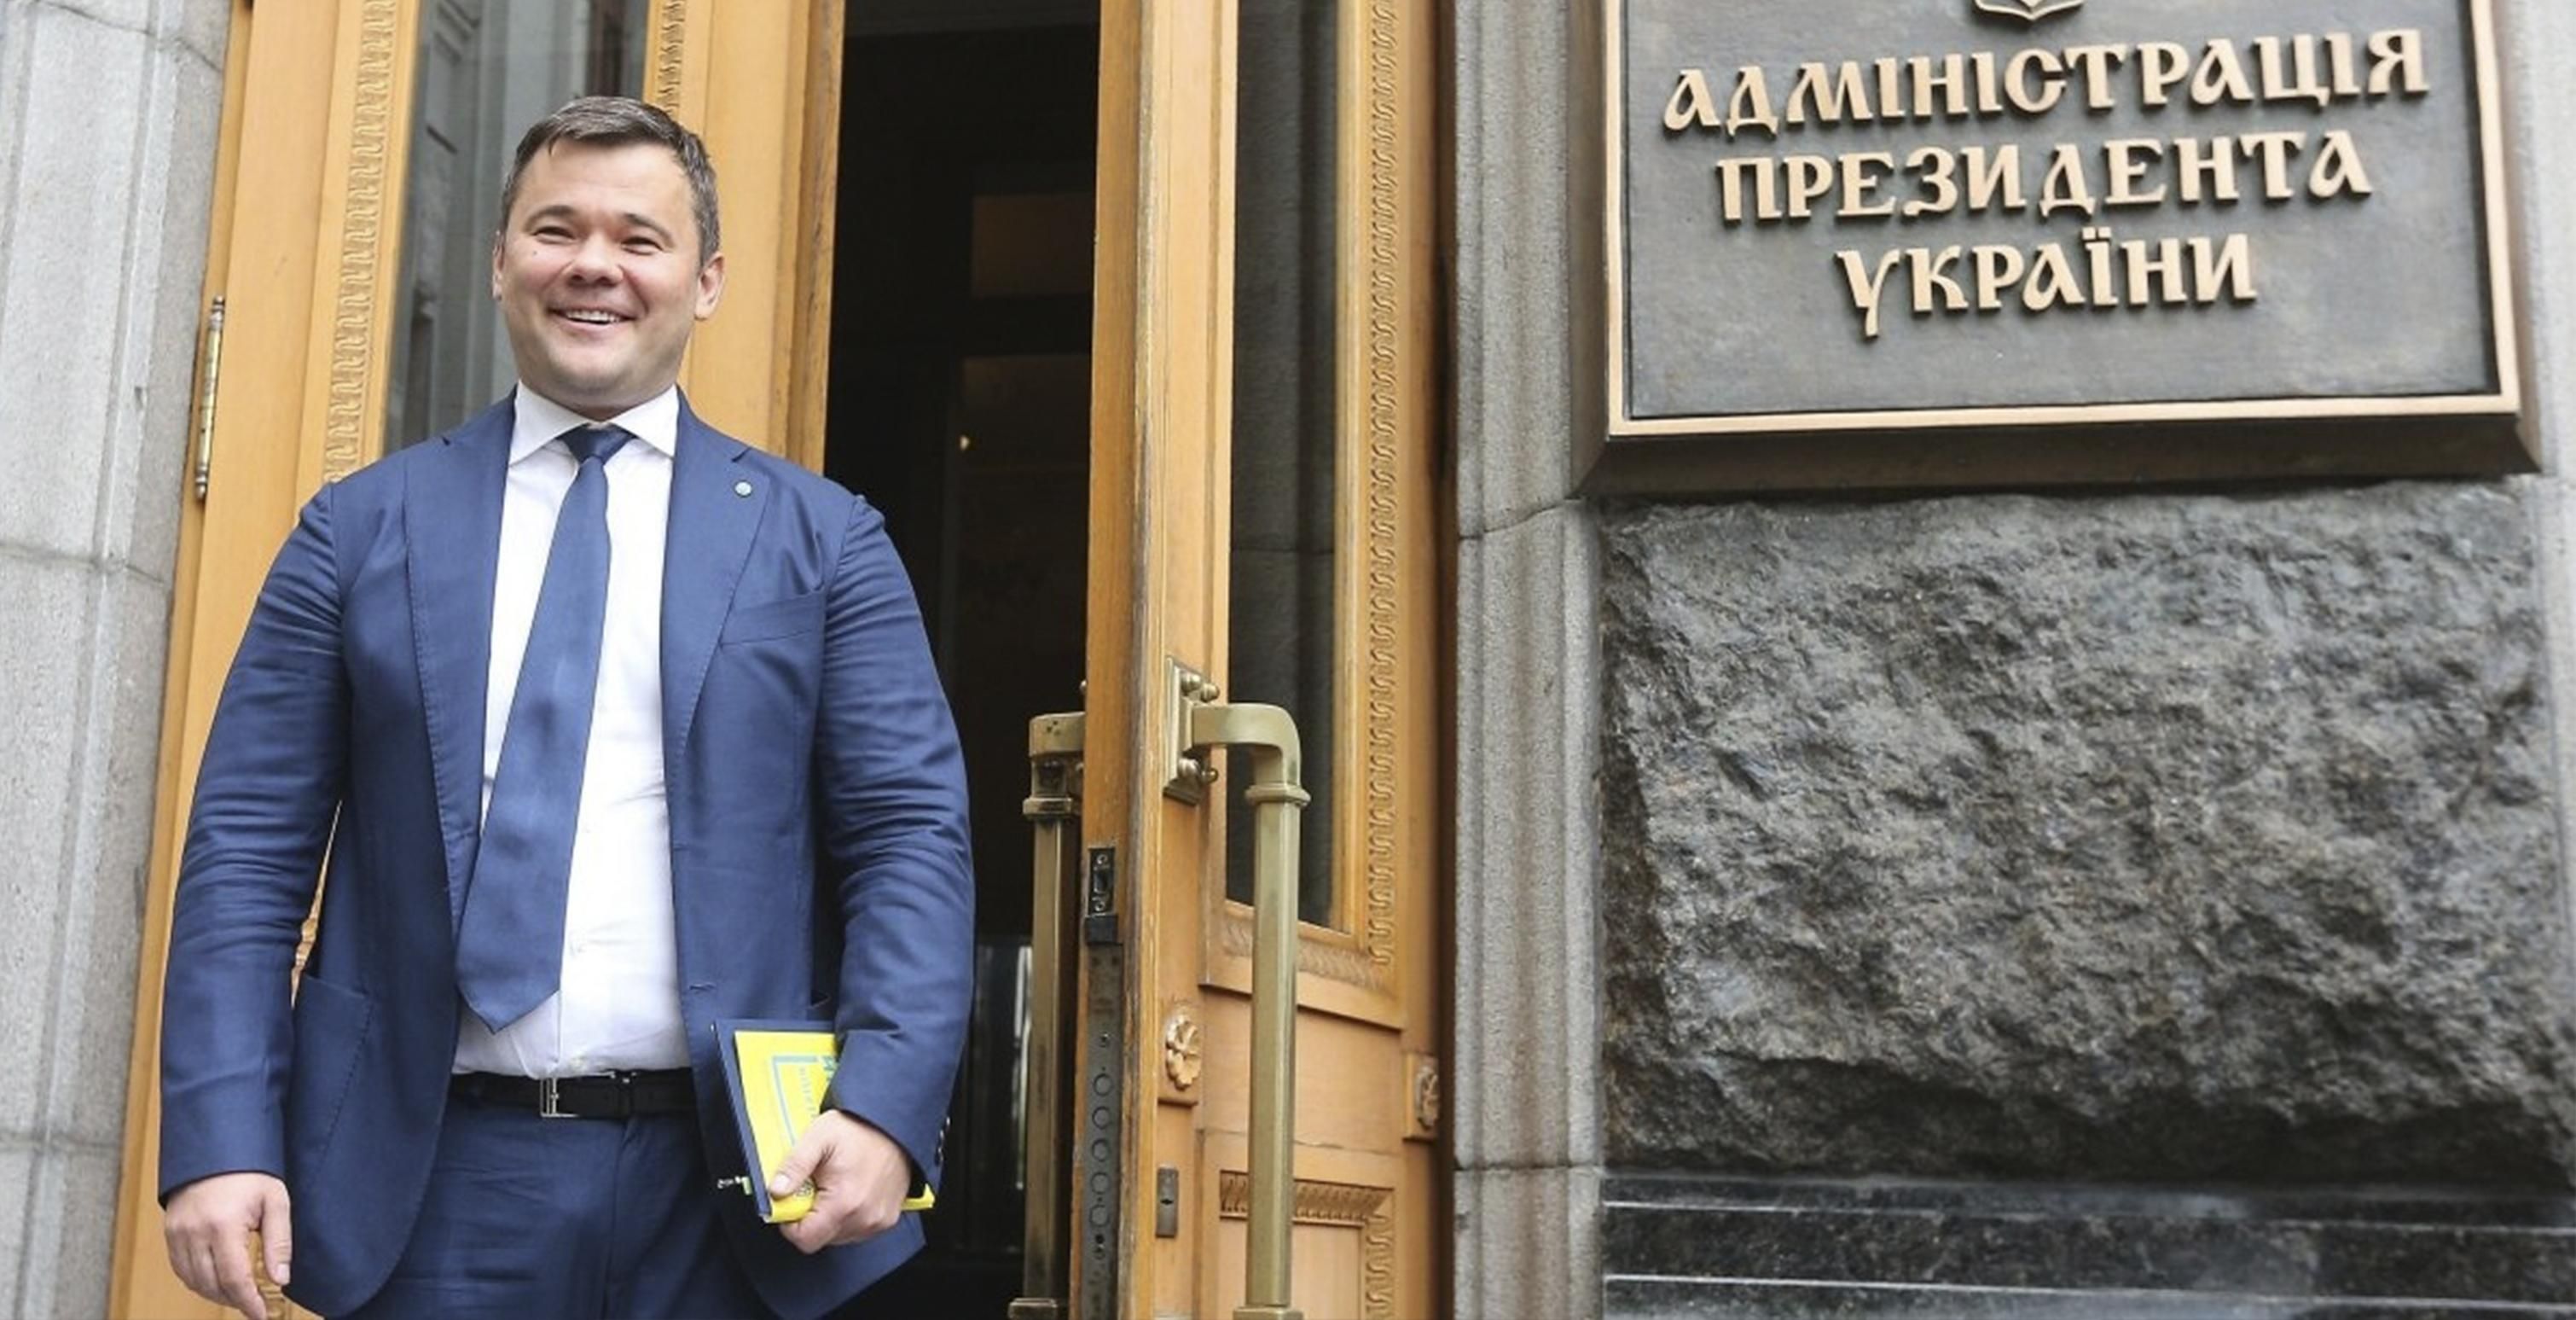 Имеет ли Андрей Богдан законное право быть главой АП: комментарий Минюста